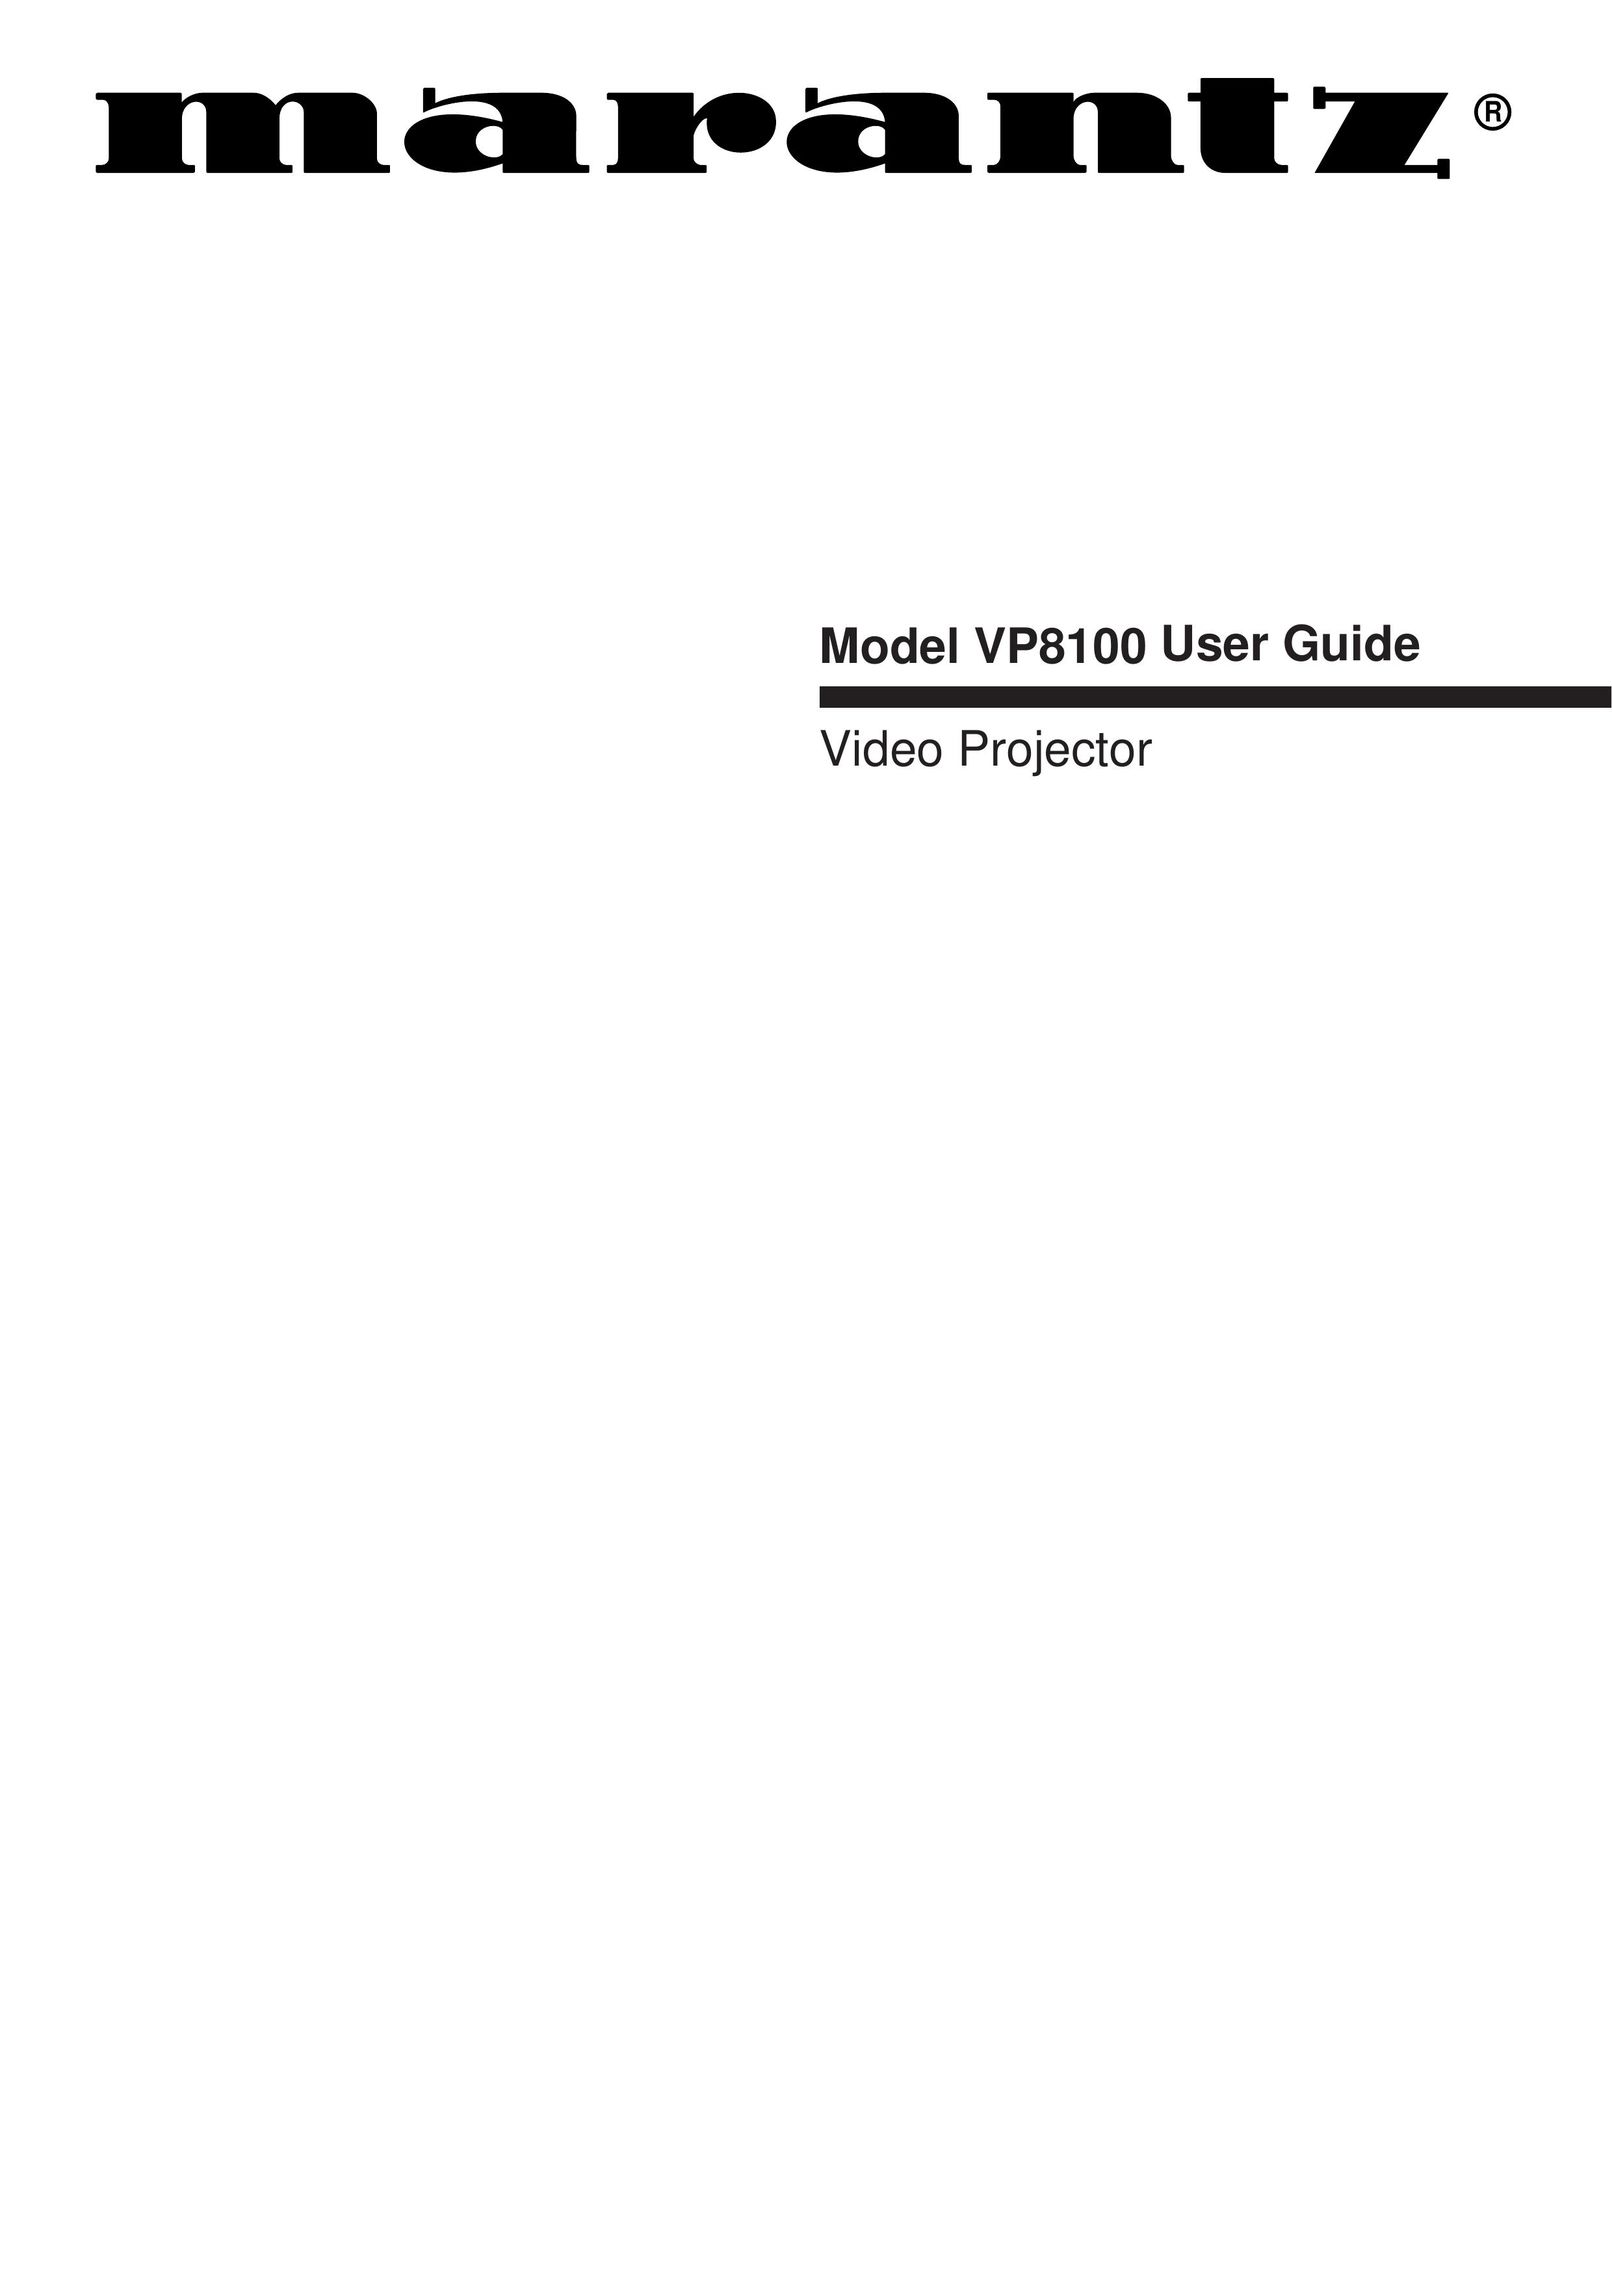 Marantz VP8100 Projector User Manual